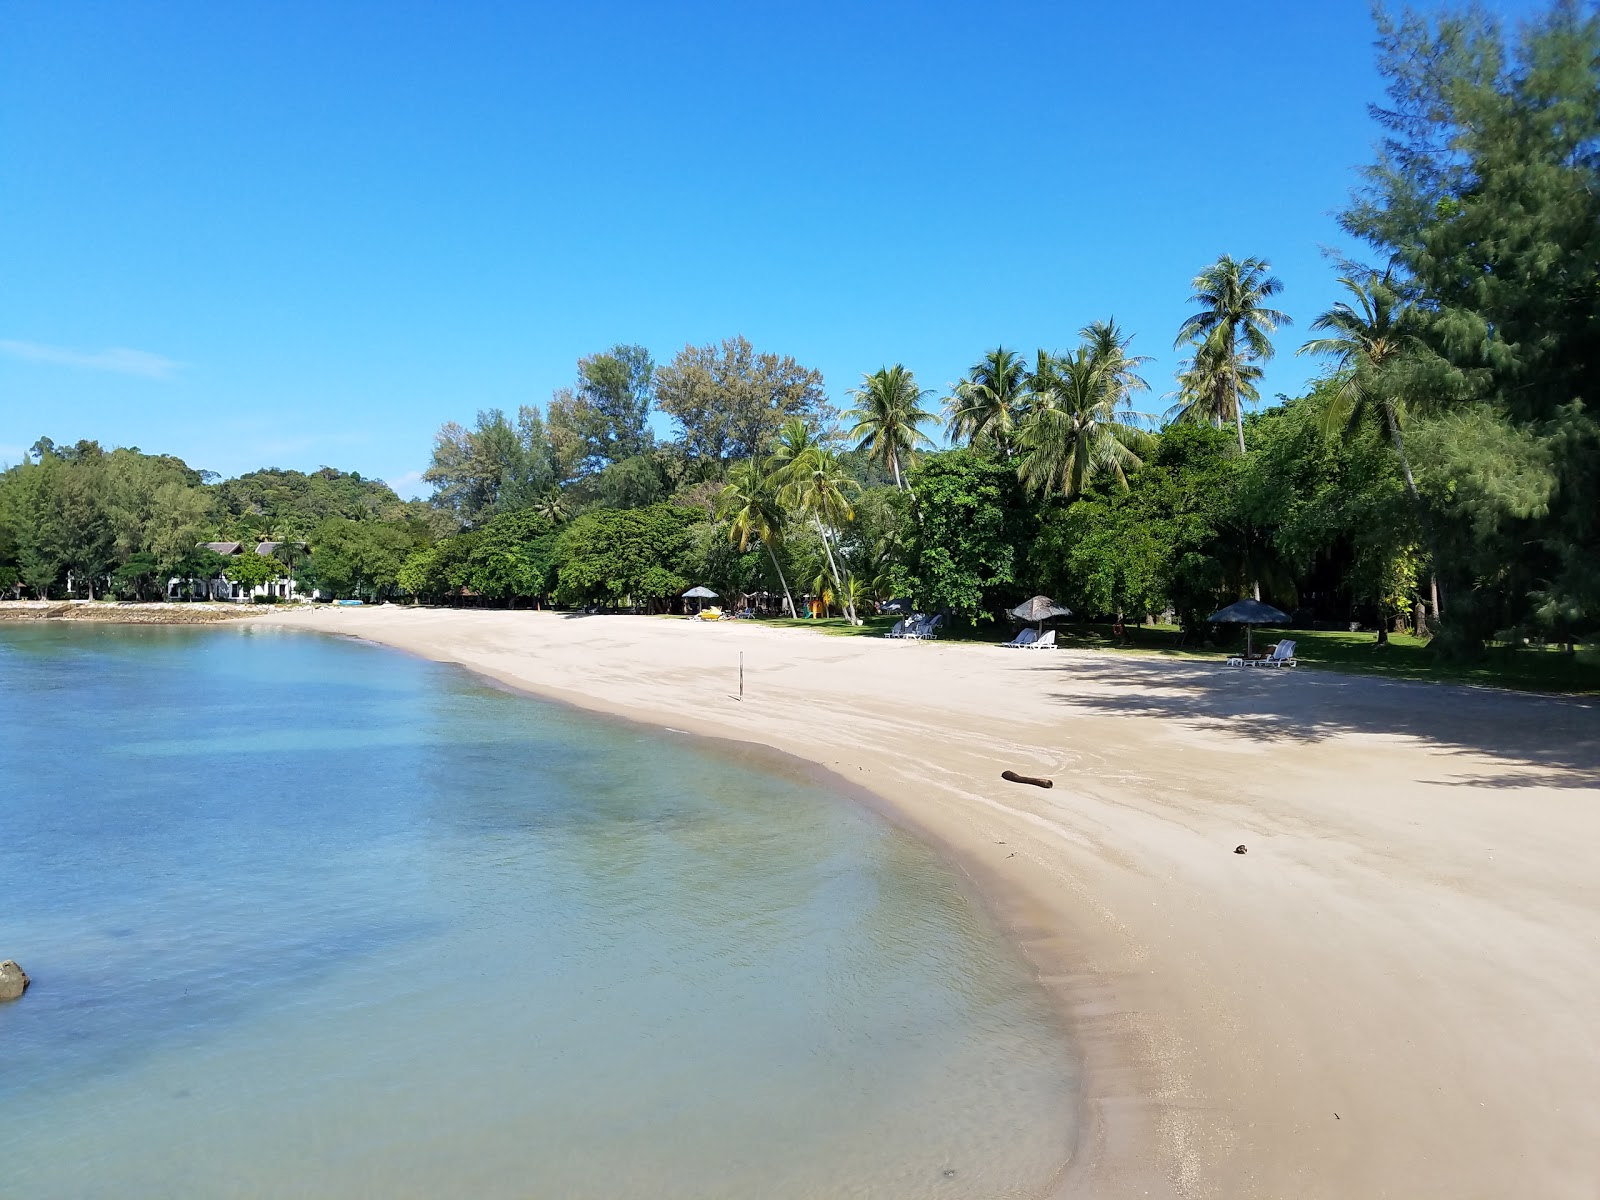 Φωτογραφία του Rebak Resort Beach με φωτεινή άμμος επιφάνεια